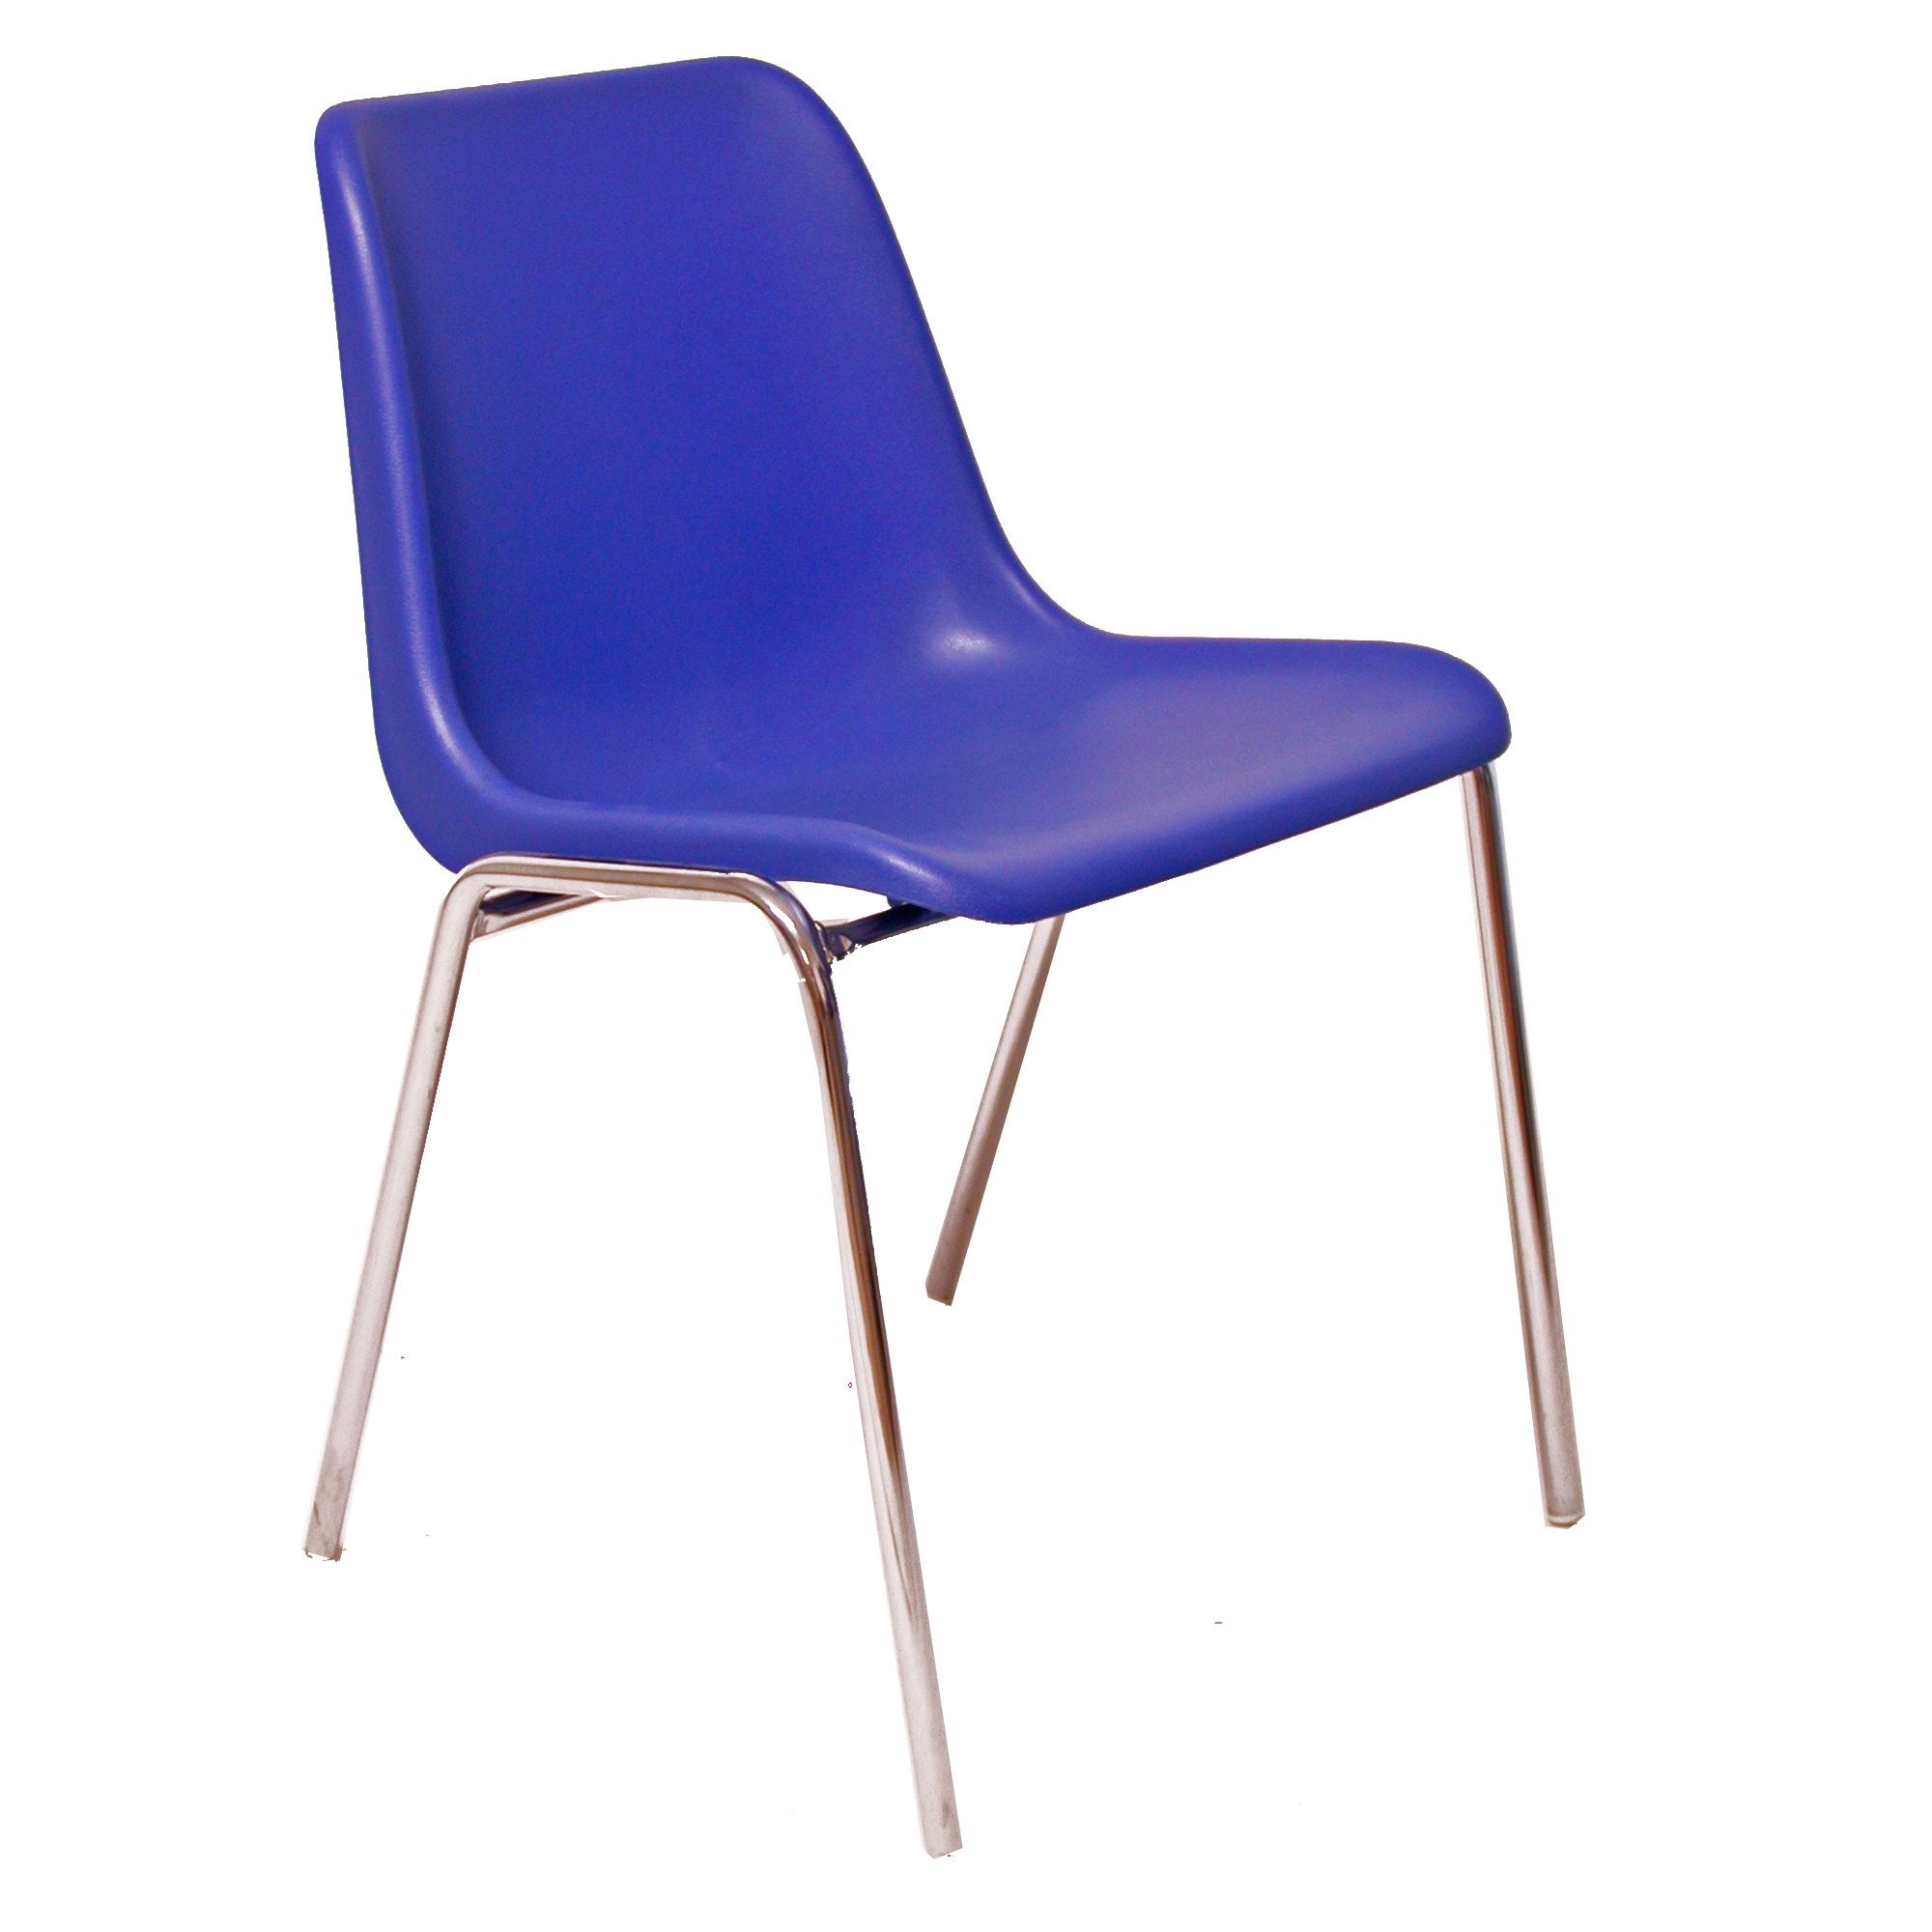 unisit-sedia-attesa-esse-blu-senza-braccioli